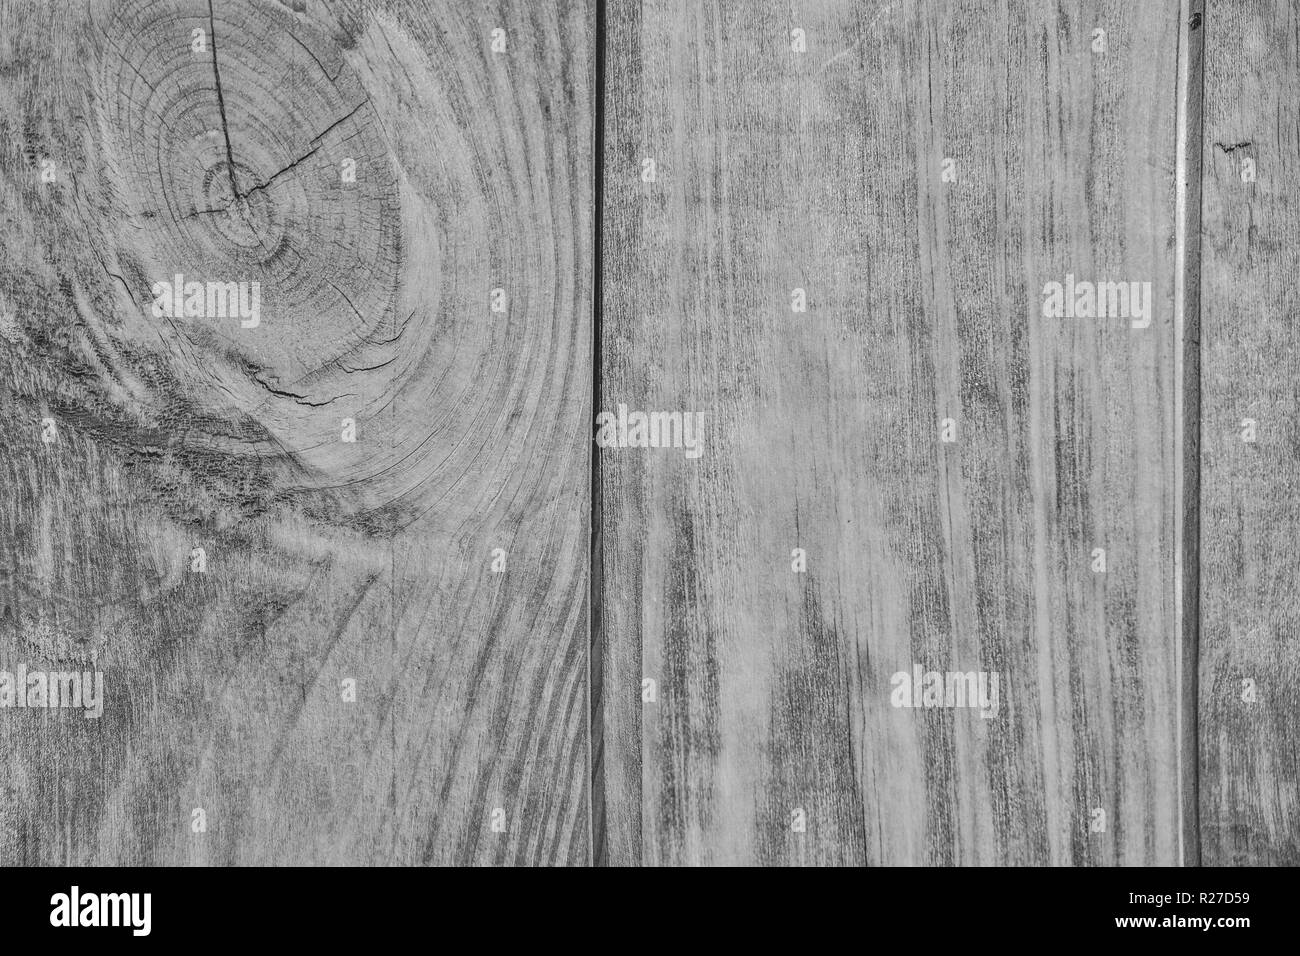 Vintage white wooden texture de bandes avec noeud - motif naturel de bois de conifères. Grunge background close up pour la conception dans le style du pays Banque D'Images